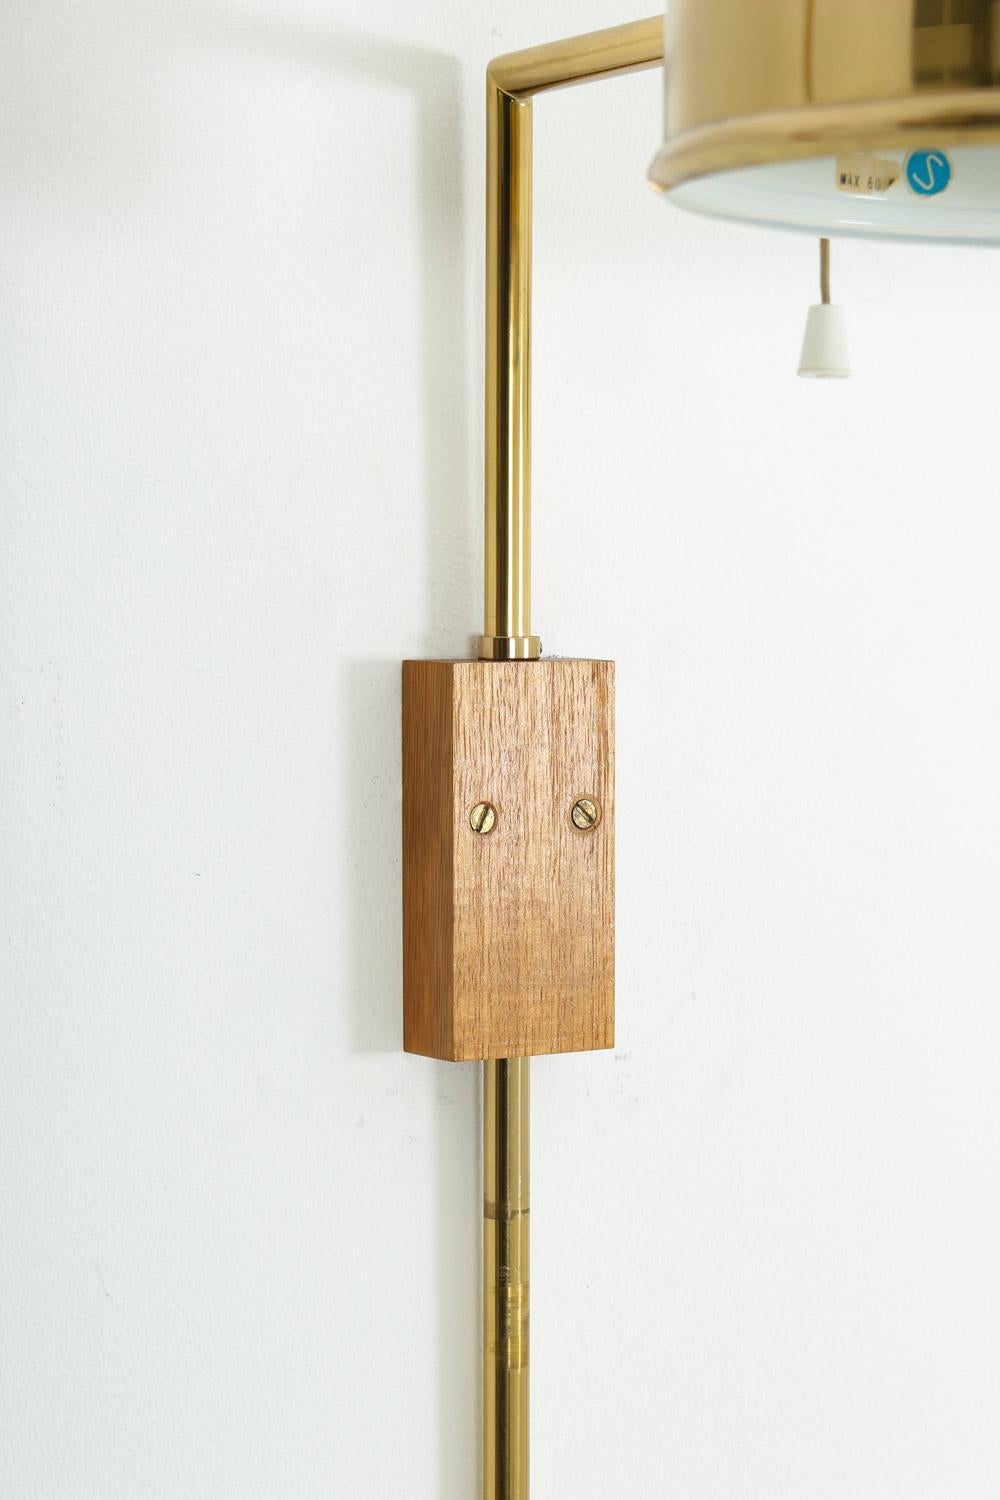 Scandinavian Midcentury Wall Lamps in Brass by Bergboms, Sweden 1